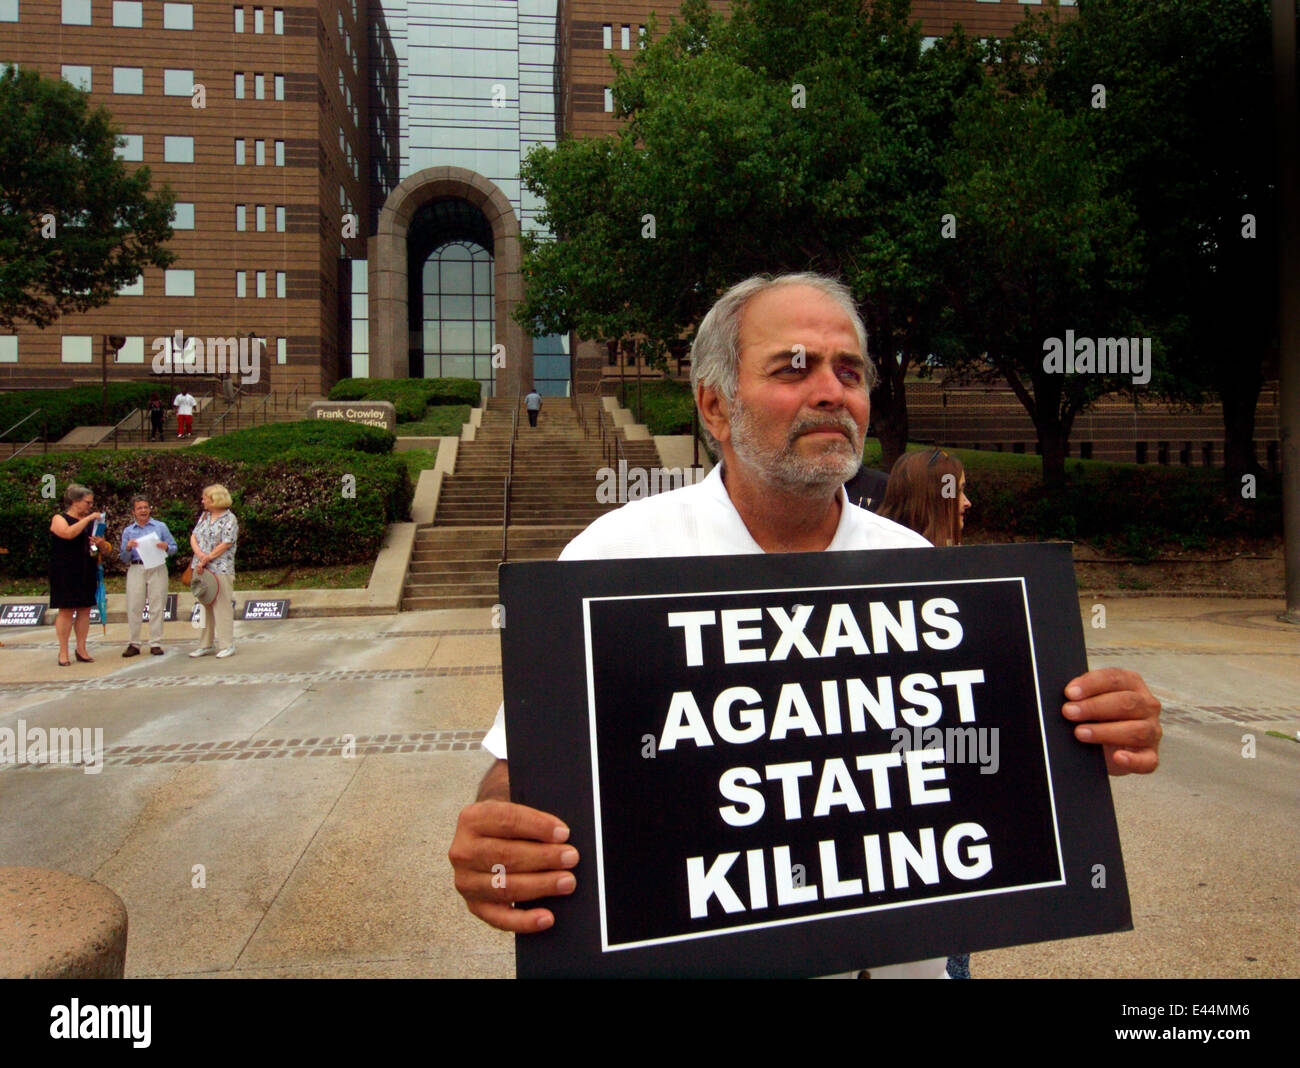 Dallas, Texas, USA. 2. Juli 2014. Hadi Jawad hält ein Schild vor dem Gerichtsgebäude Frank Crowley anlässlich der U.S. Supreme Court Entscheidung über 2. Juli 1976 wieder die Todesstrafe Credit: J. G. Domke/Alamy Live News Stockfoto